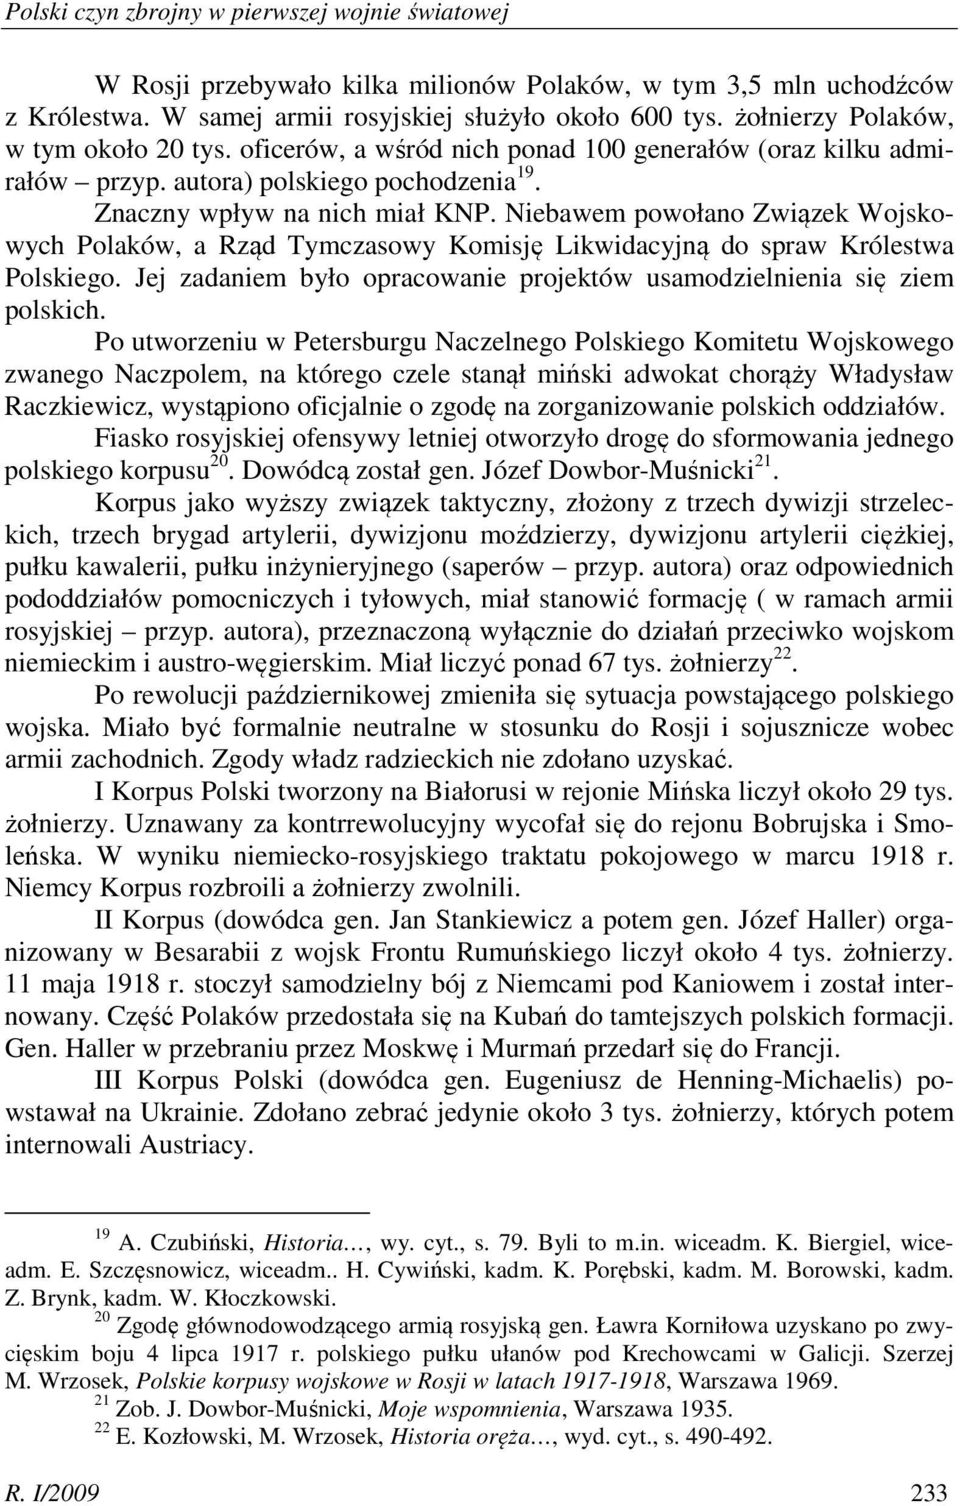 Niebawem powołano Związek Wojskowych Polaków, a Rząd Tymczasowy Komisję Likwidacyjną do spraw Królestwa Polskiego. Jej zadaniem było opracowanie projektów usamodzielnienia się ziem polskich.